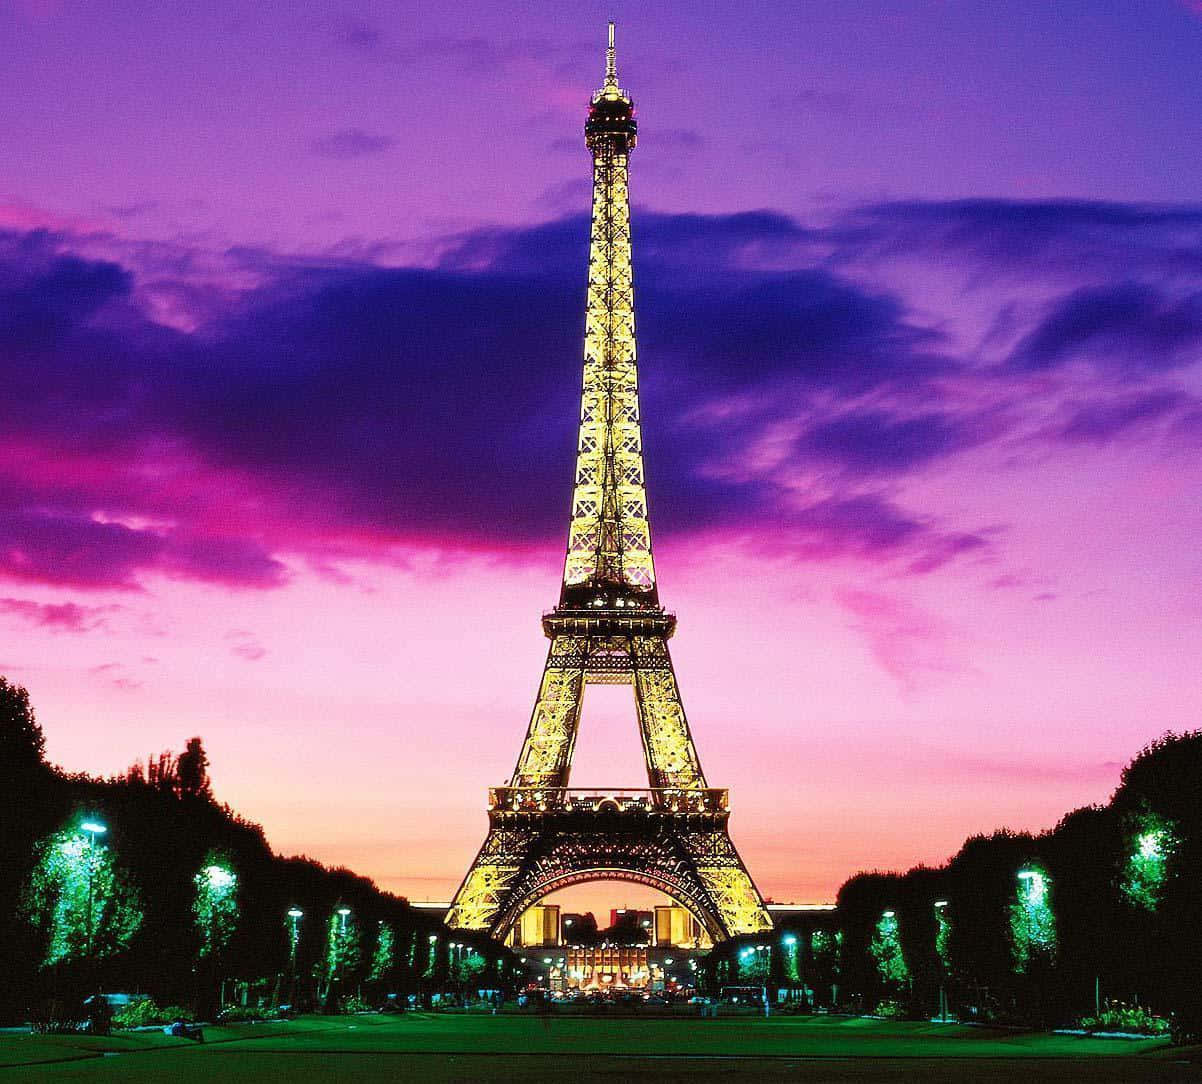 Imagende La Torre Eiffel De Noche Con Un Cielo Morado.